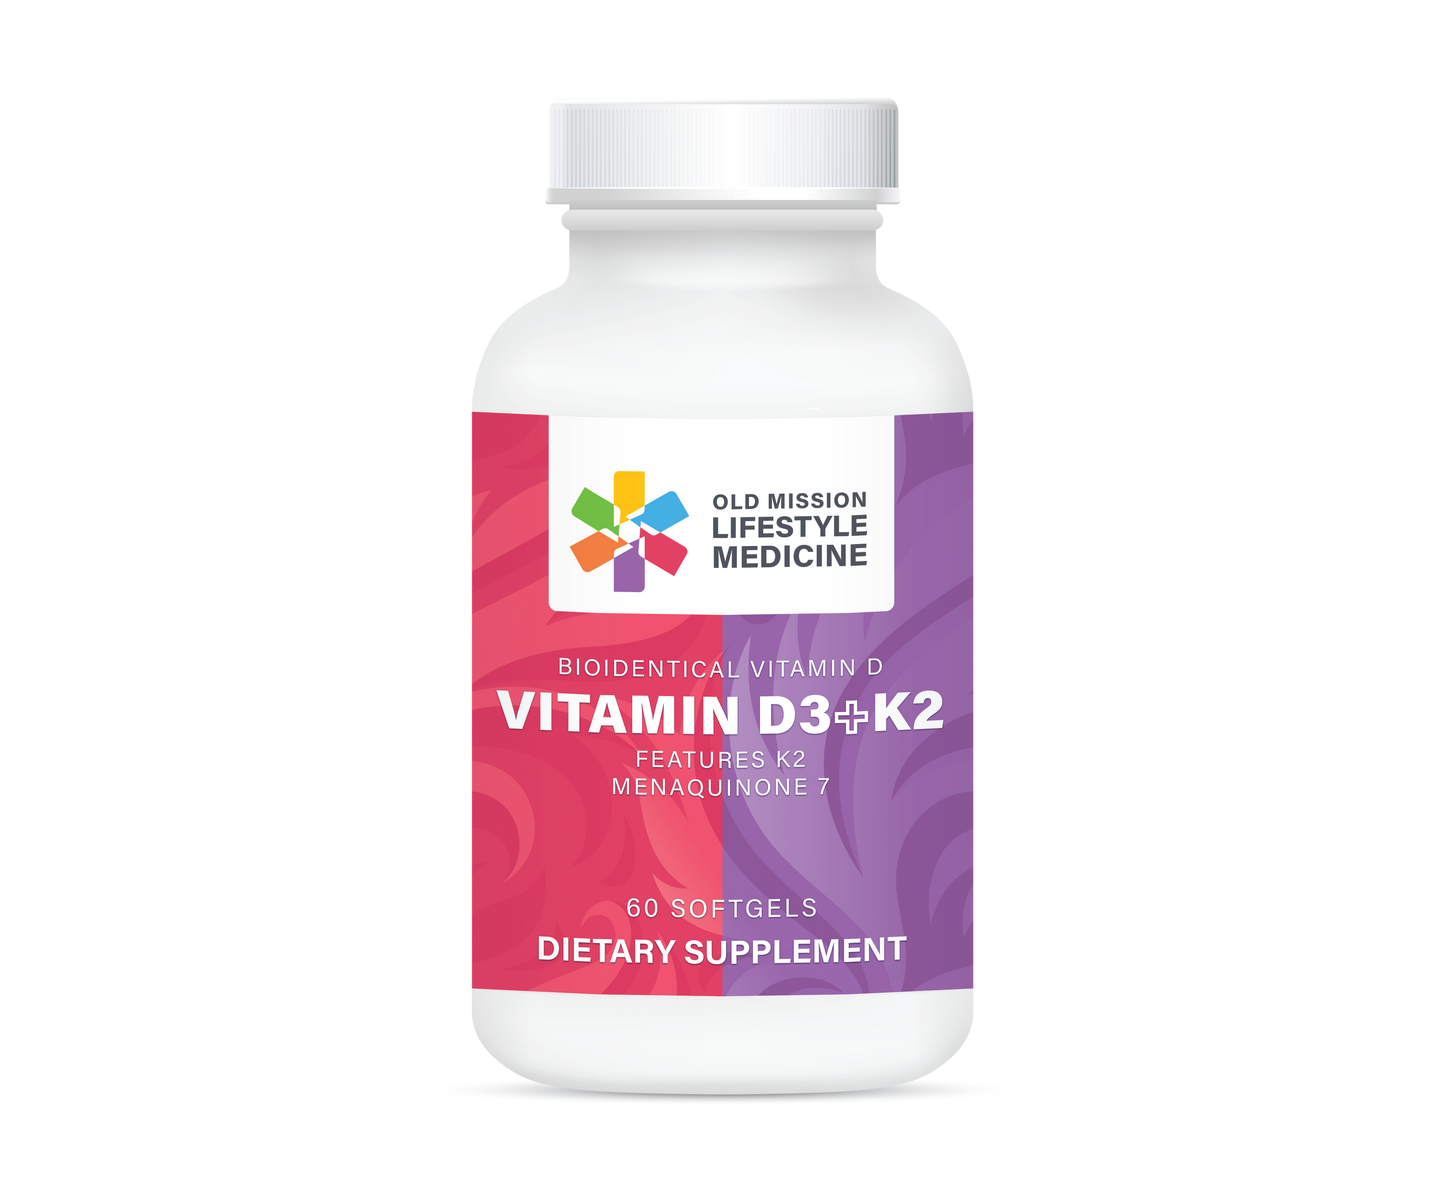 Vitamin D3+K2